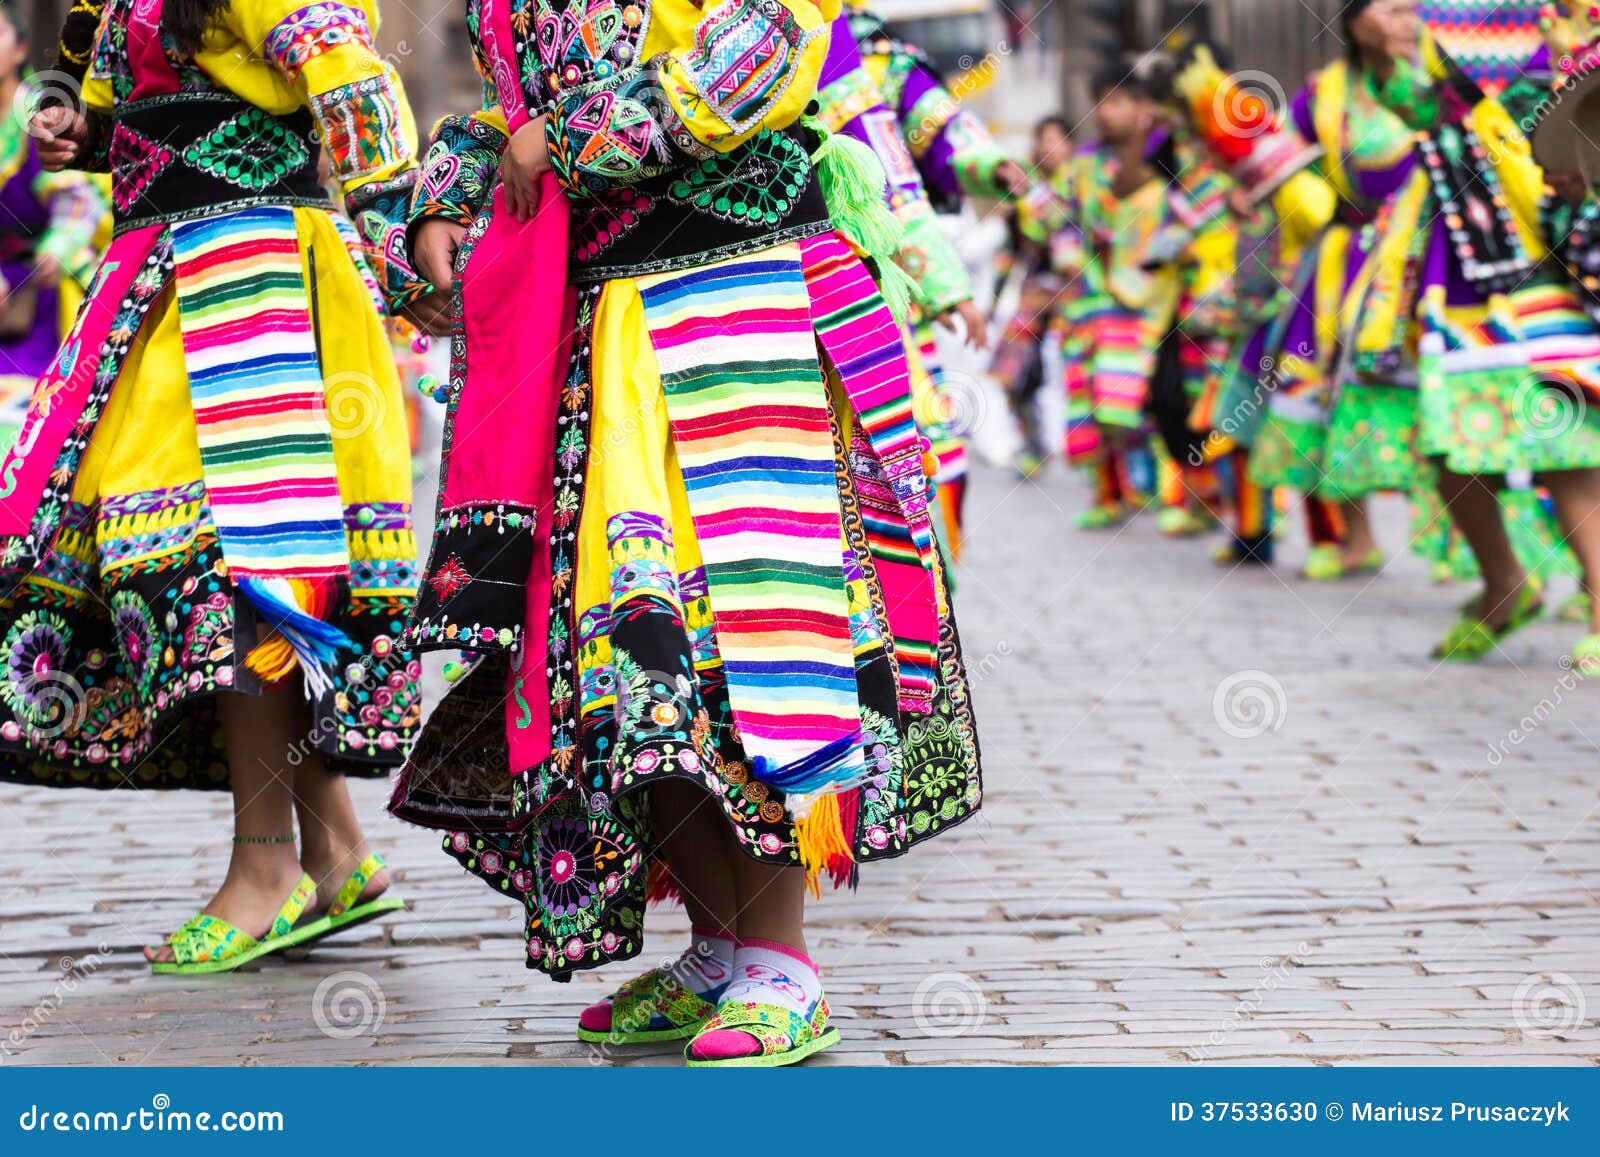 peruvian dancers